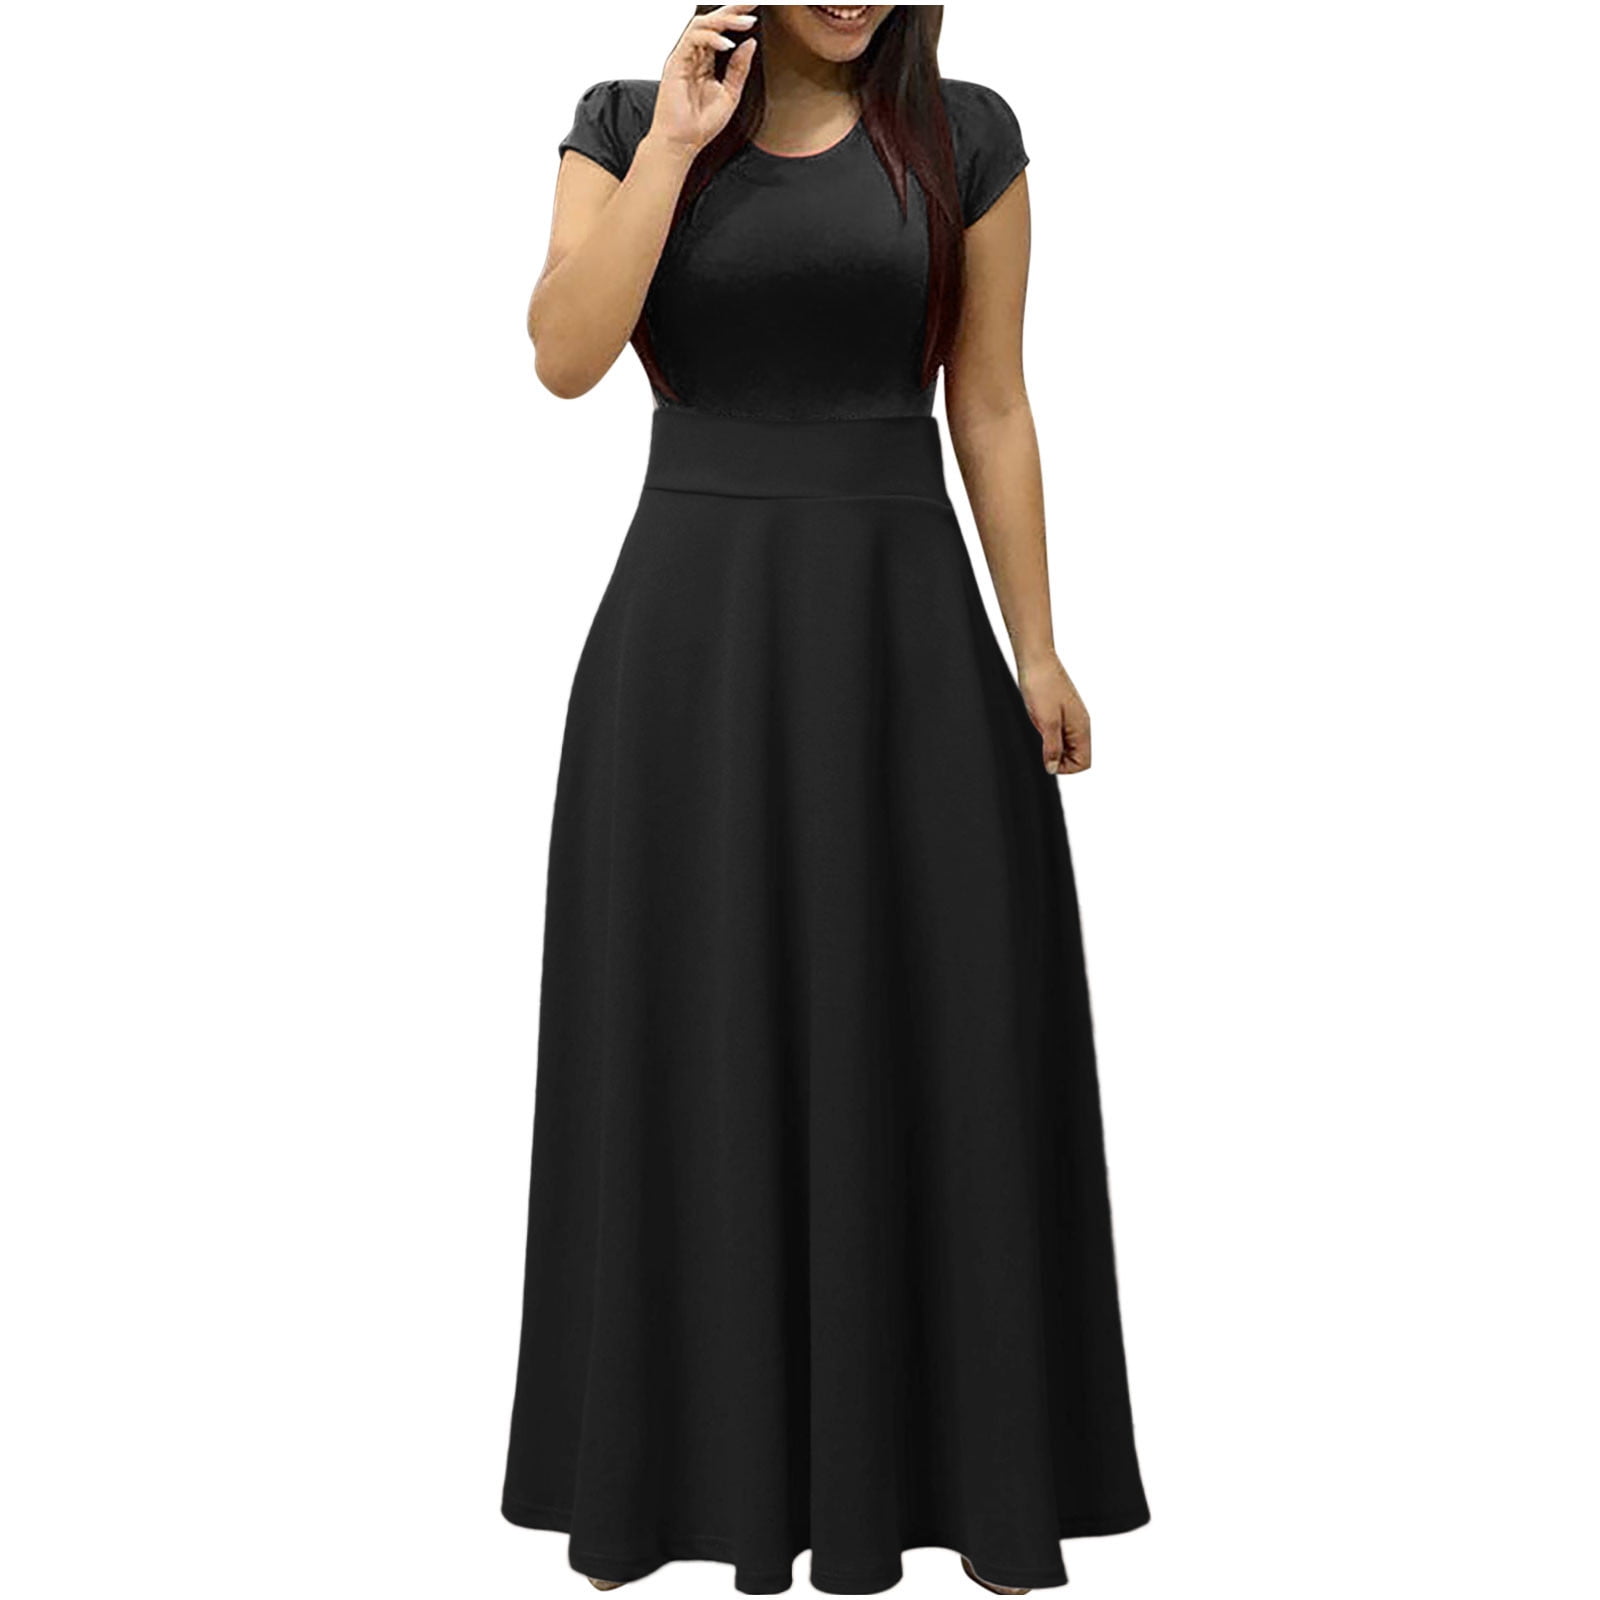 Drindf Black Dresses for Women Basic Crew Collar Short Sleeve Long ...